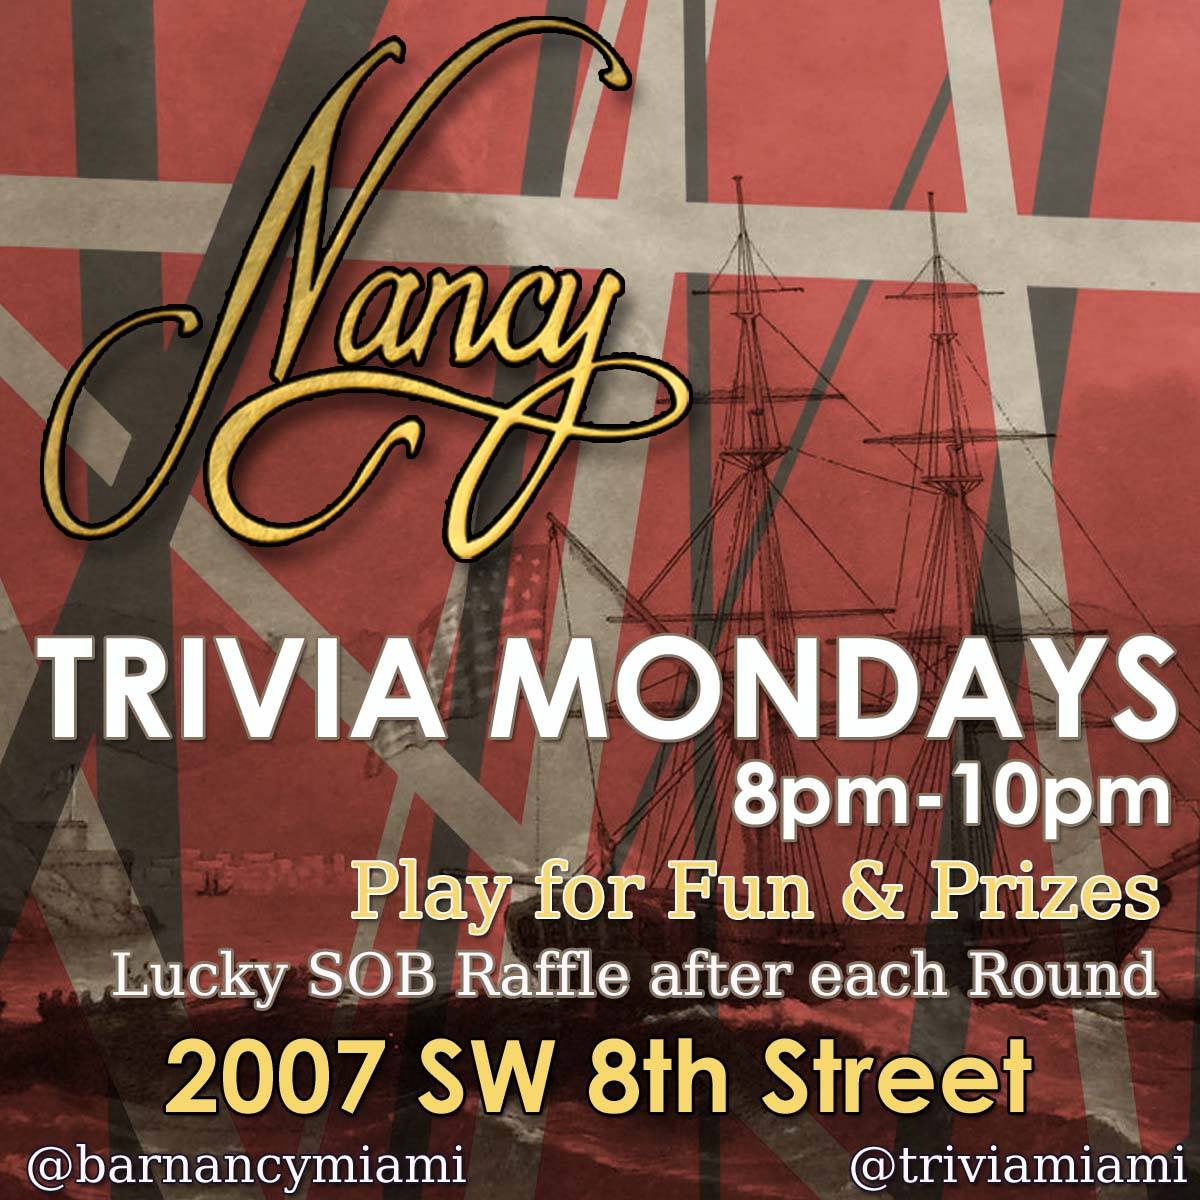 Trivia Mondays at Bar Nancy